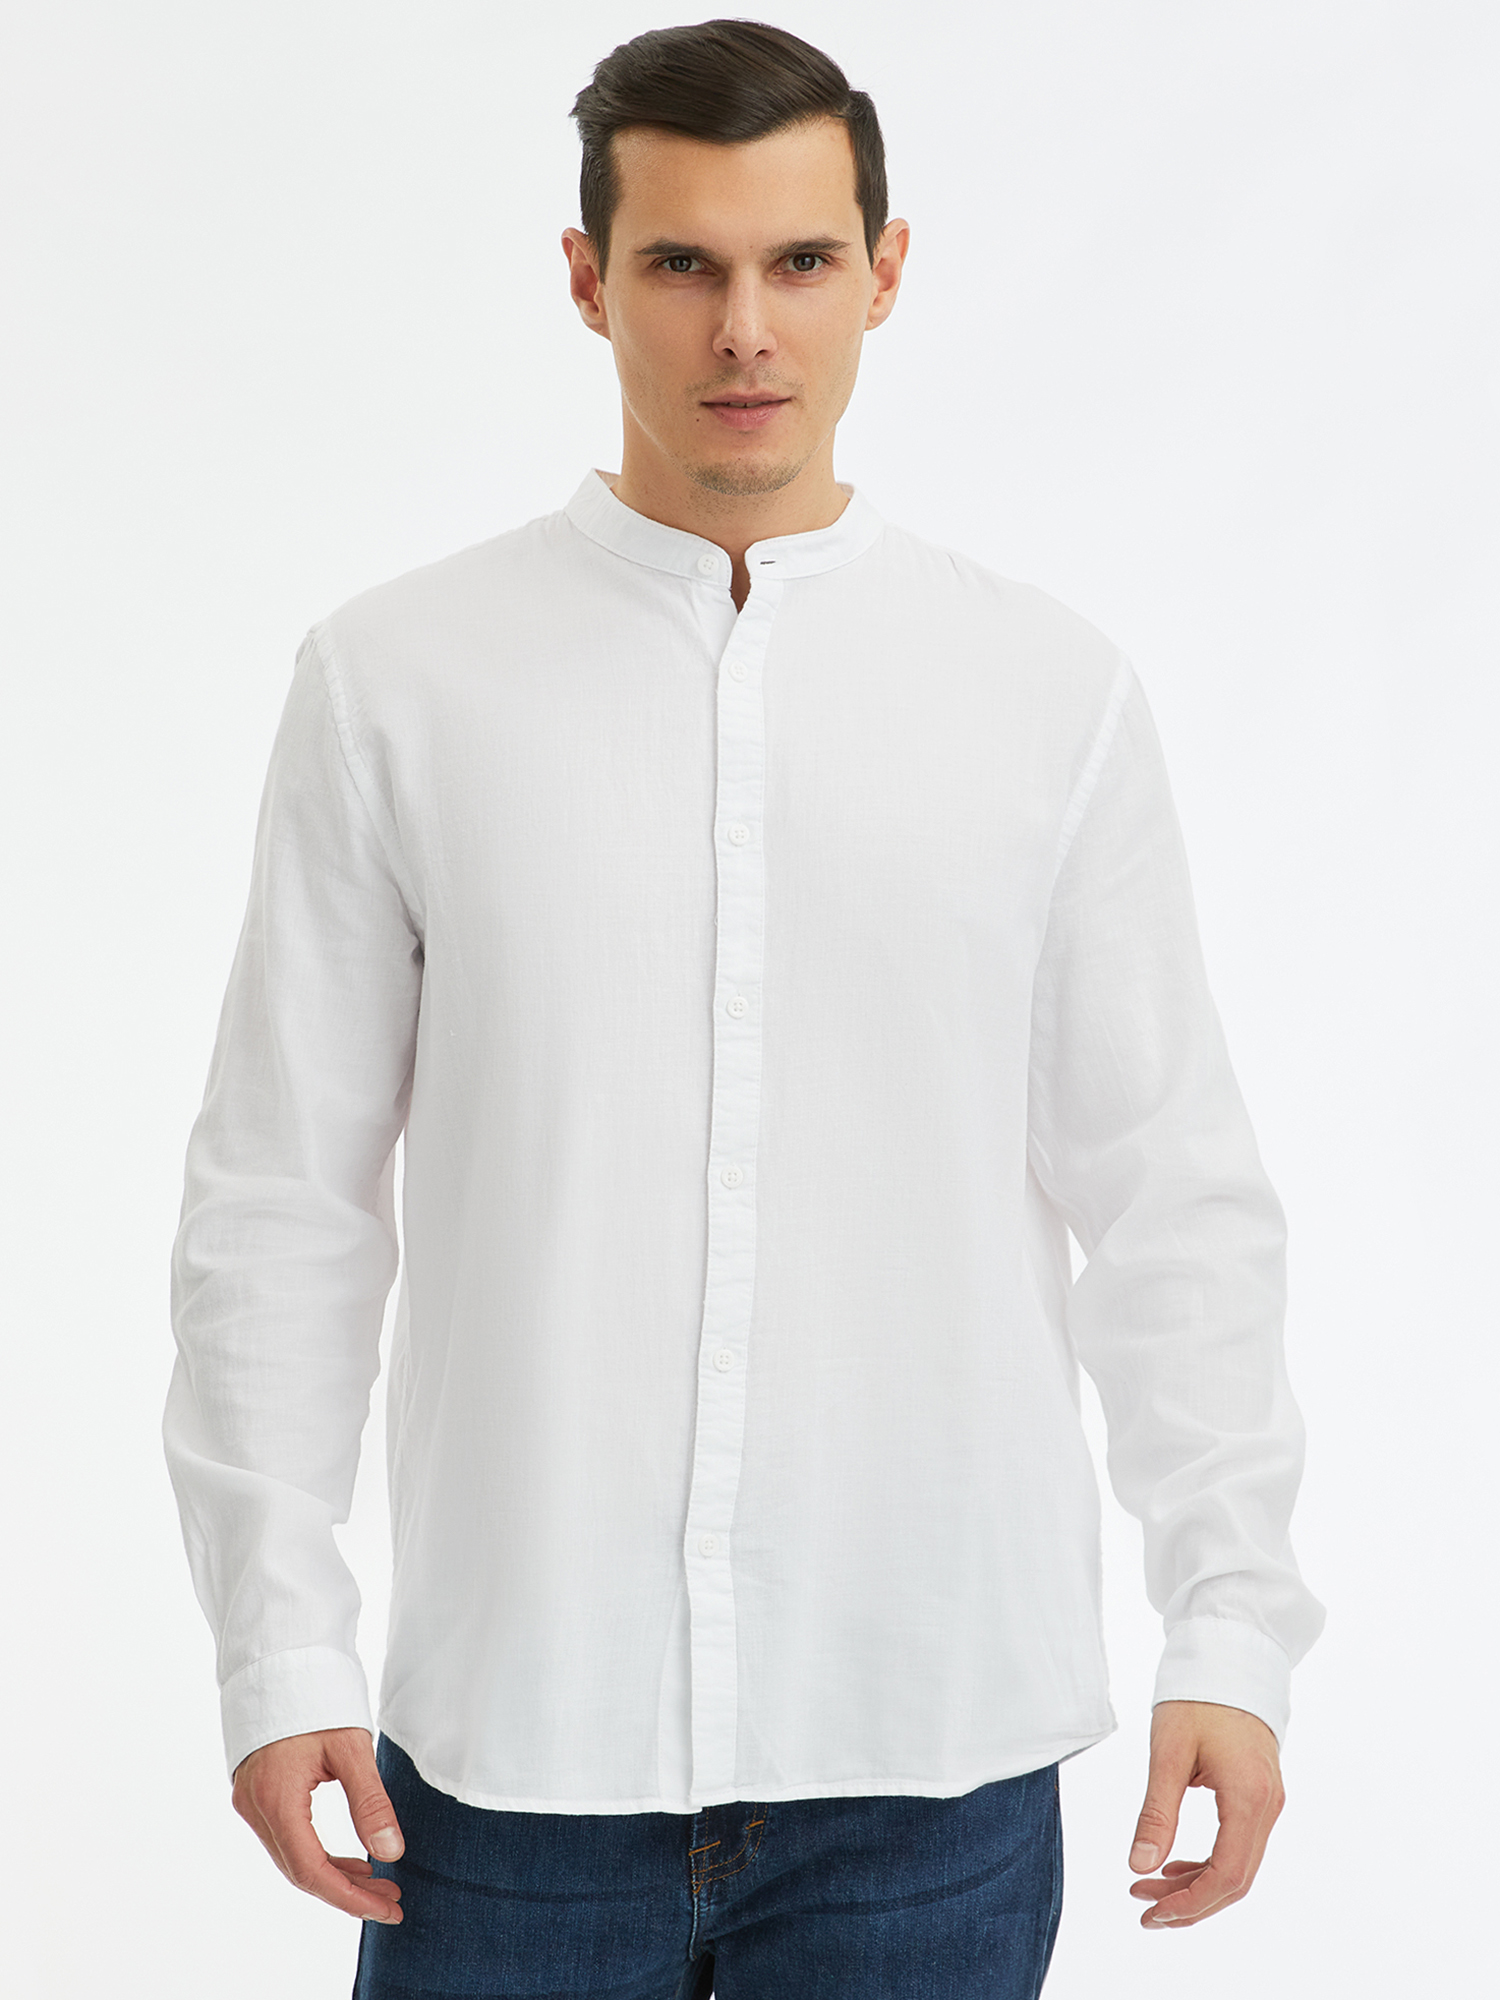 Рубашка мужская oodji 3L310194M-1 белая L